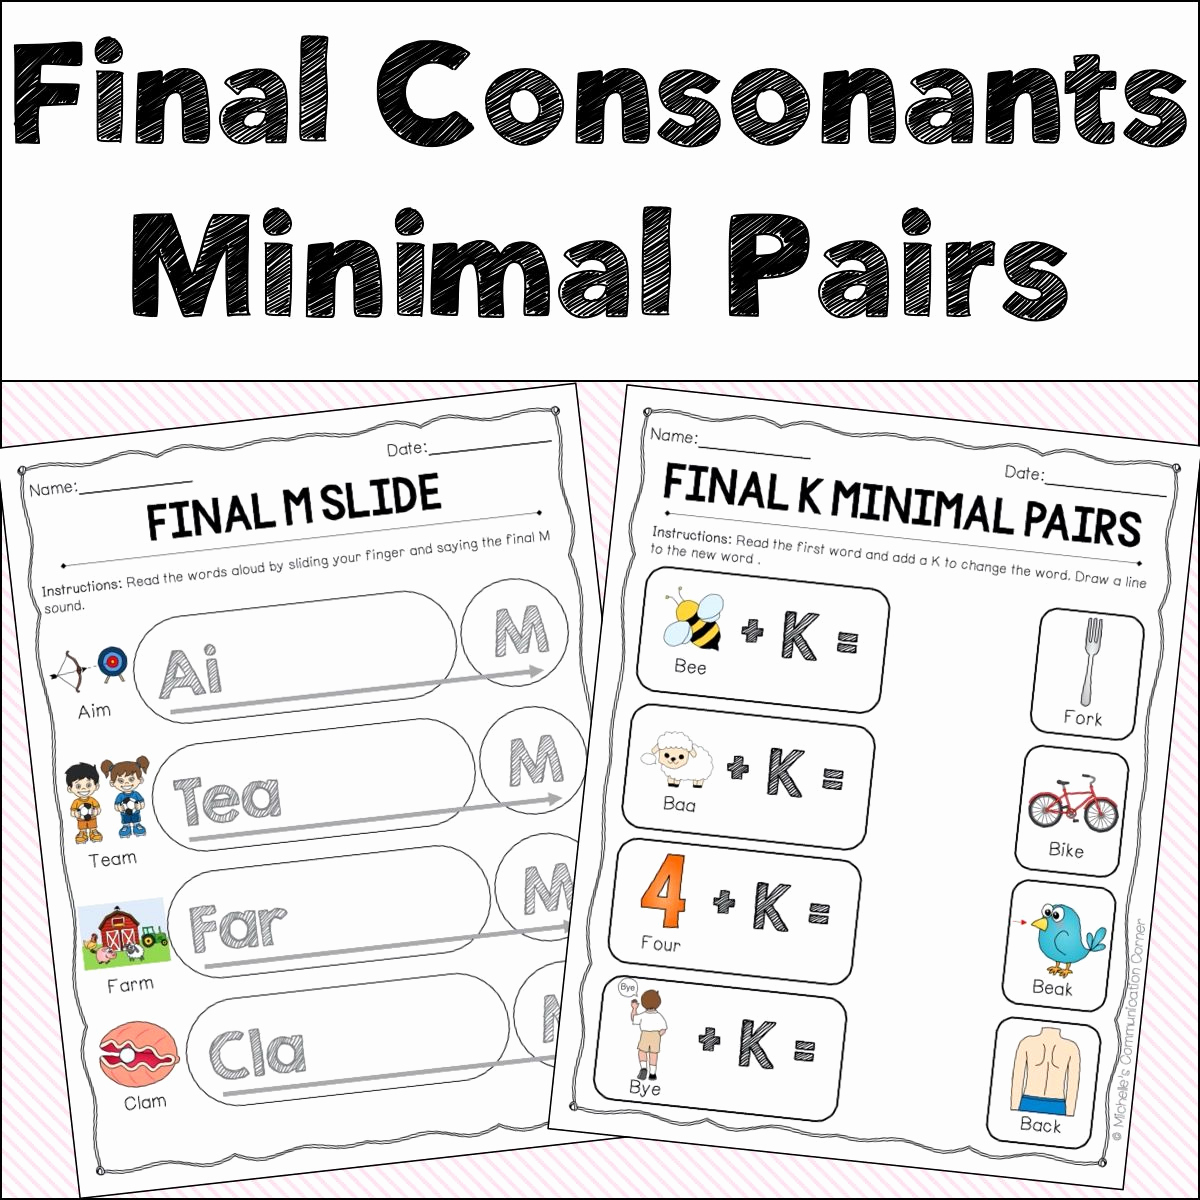 Final Consonant Deletion Worksheet Unique Final Consonant Deletion Minimal Pairs Worksheets In 2020